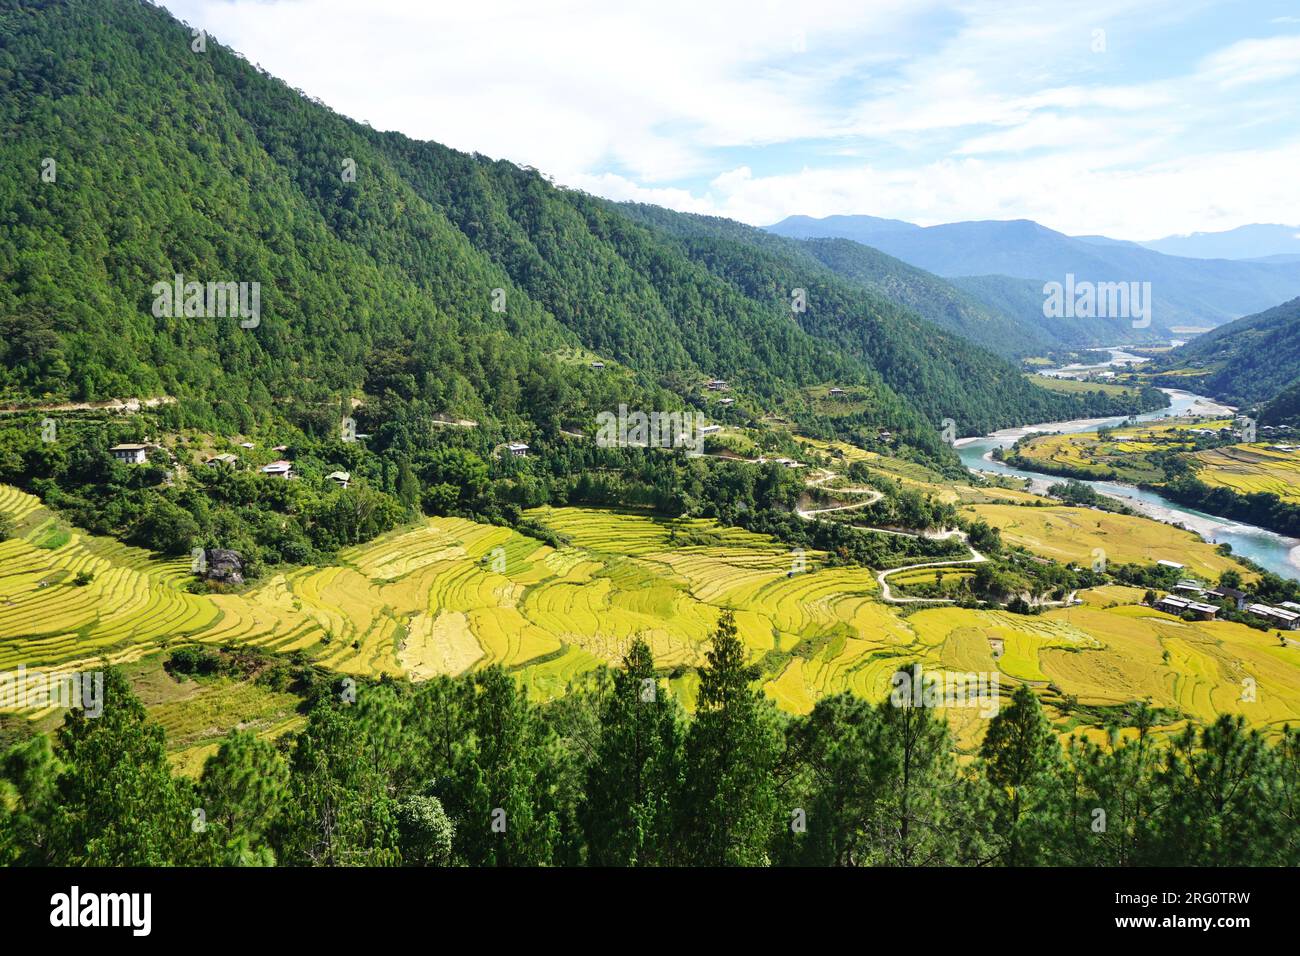 Malerischer Blick auf ein Tal im ländlichen Bhutan mit hellgrünen Reisterrassen, bewaldeten Berghängen und einem gewundenen Fluss, der sich in die Ferne schlängelt Stockfoto